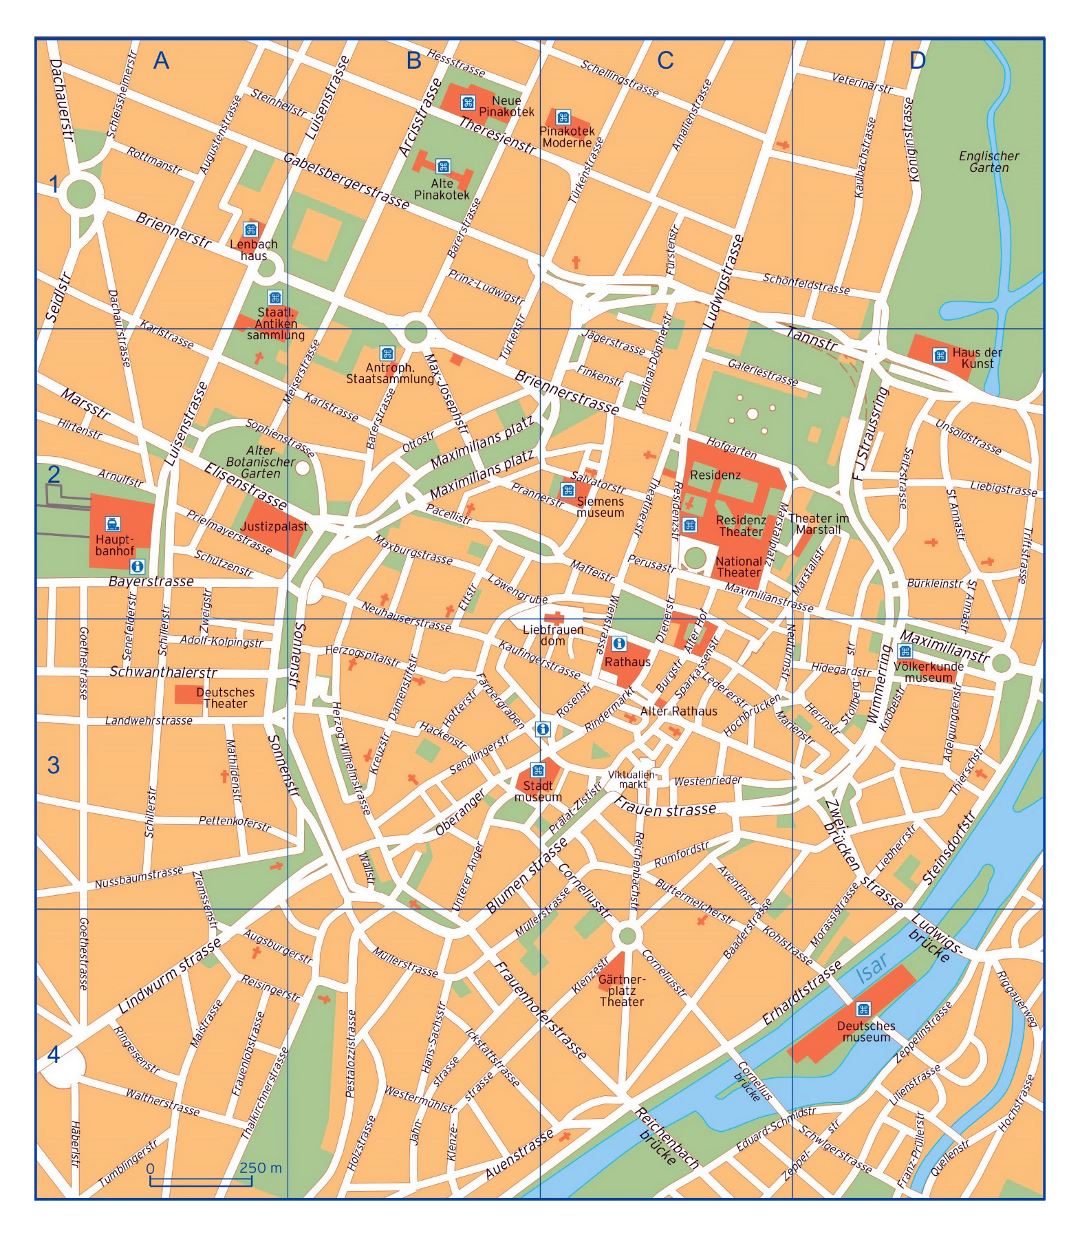 Большая детальная карта центральной части города Мюнхена с названиями улиц